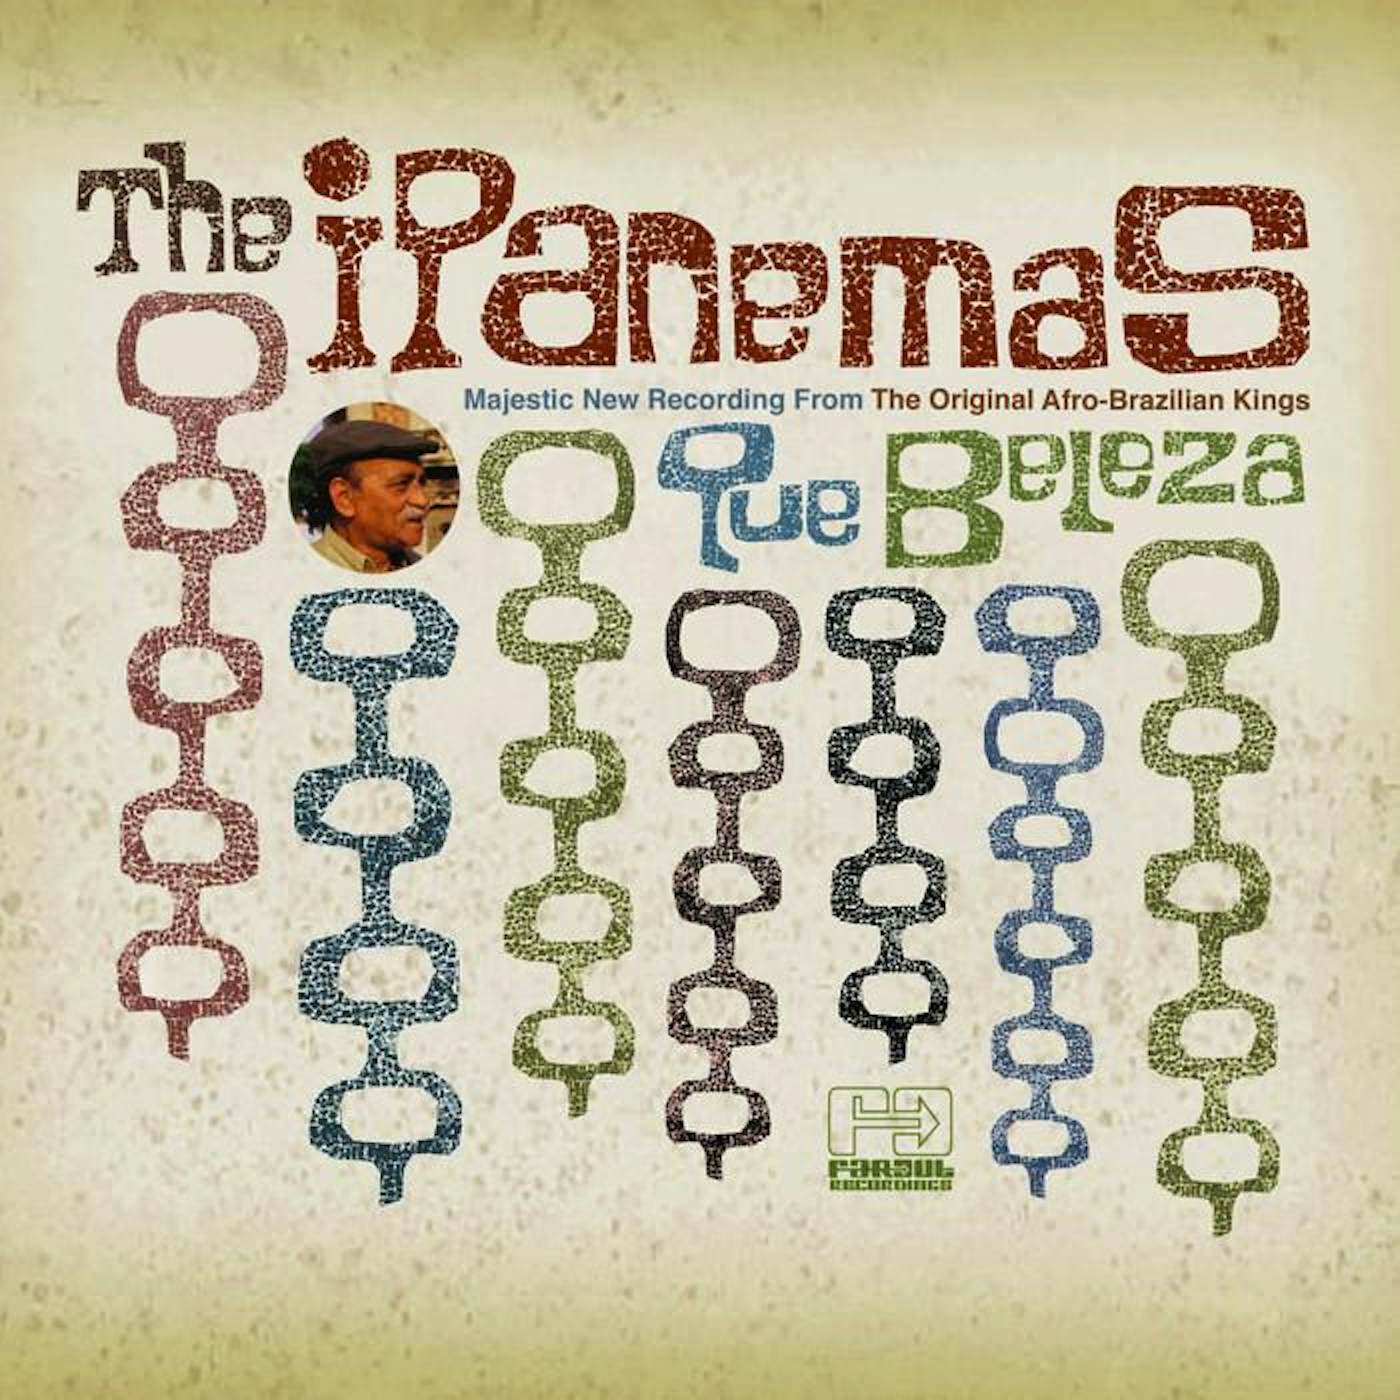 The Ipanemas - Que Beleza [2010]